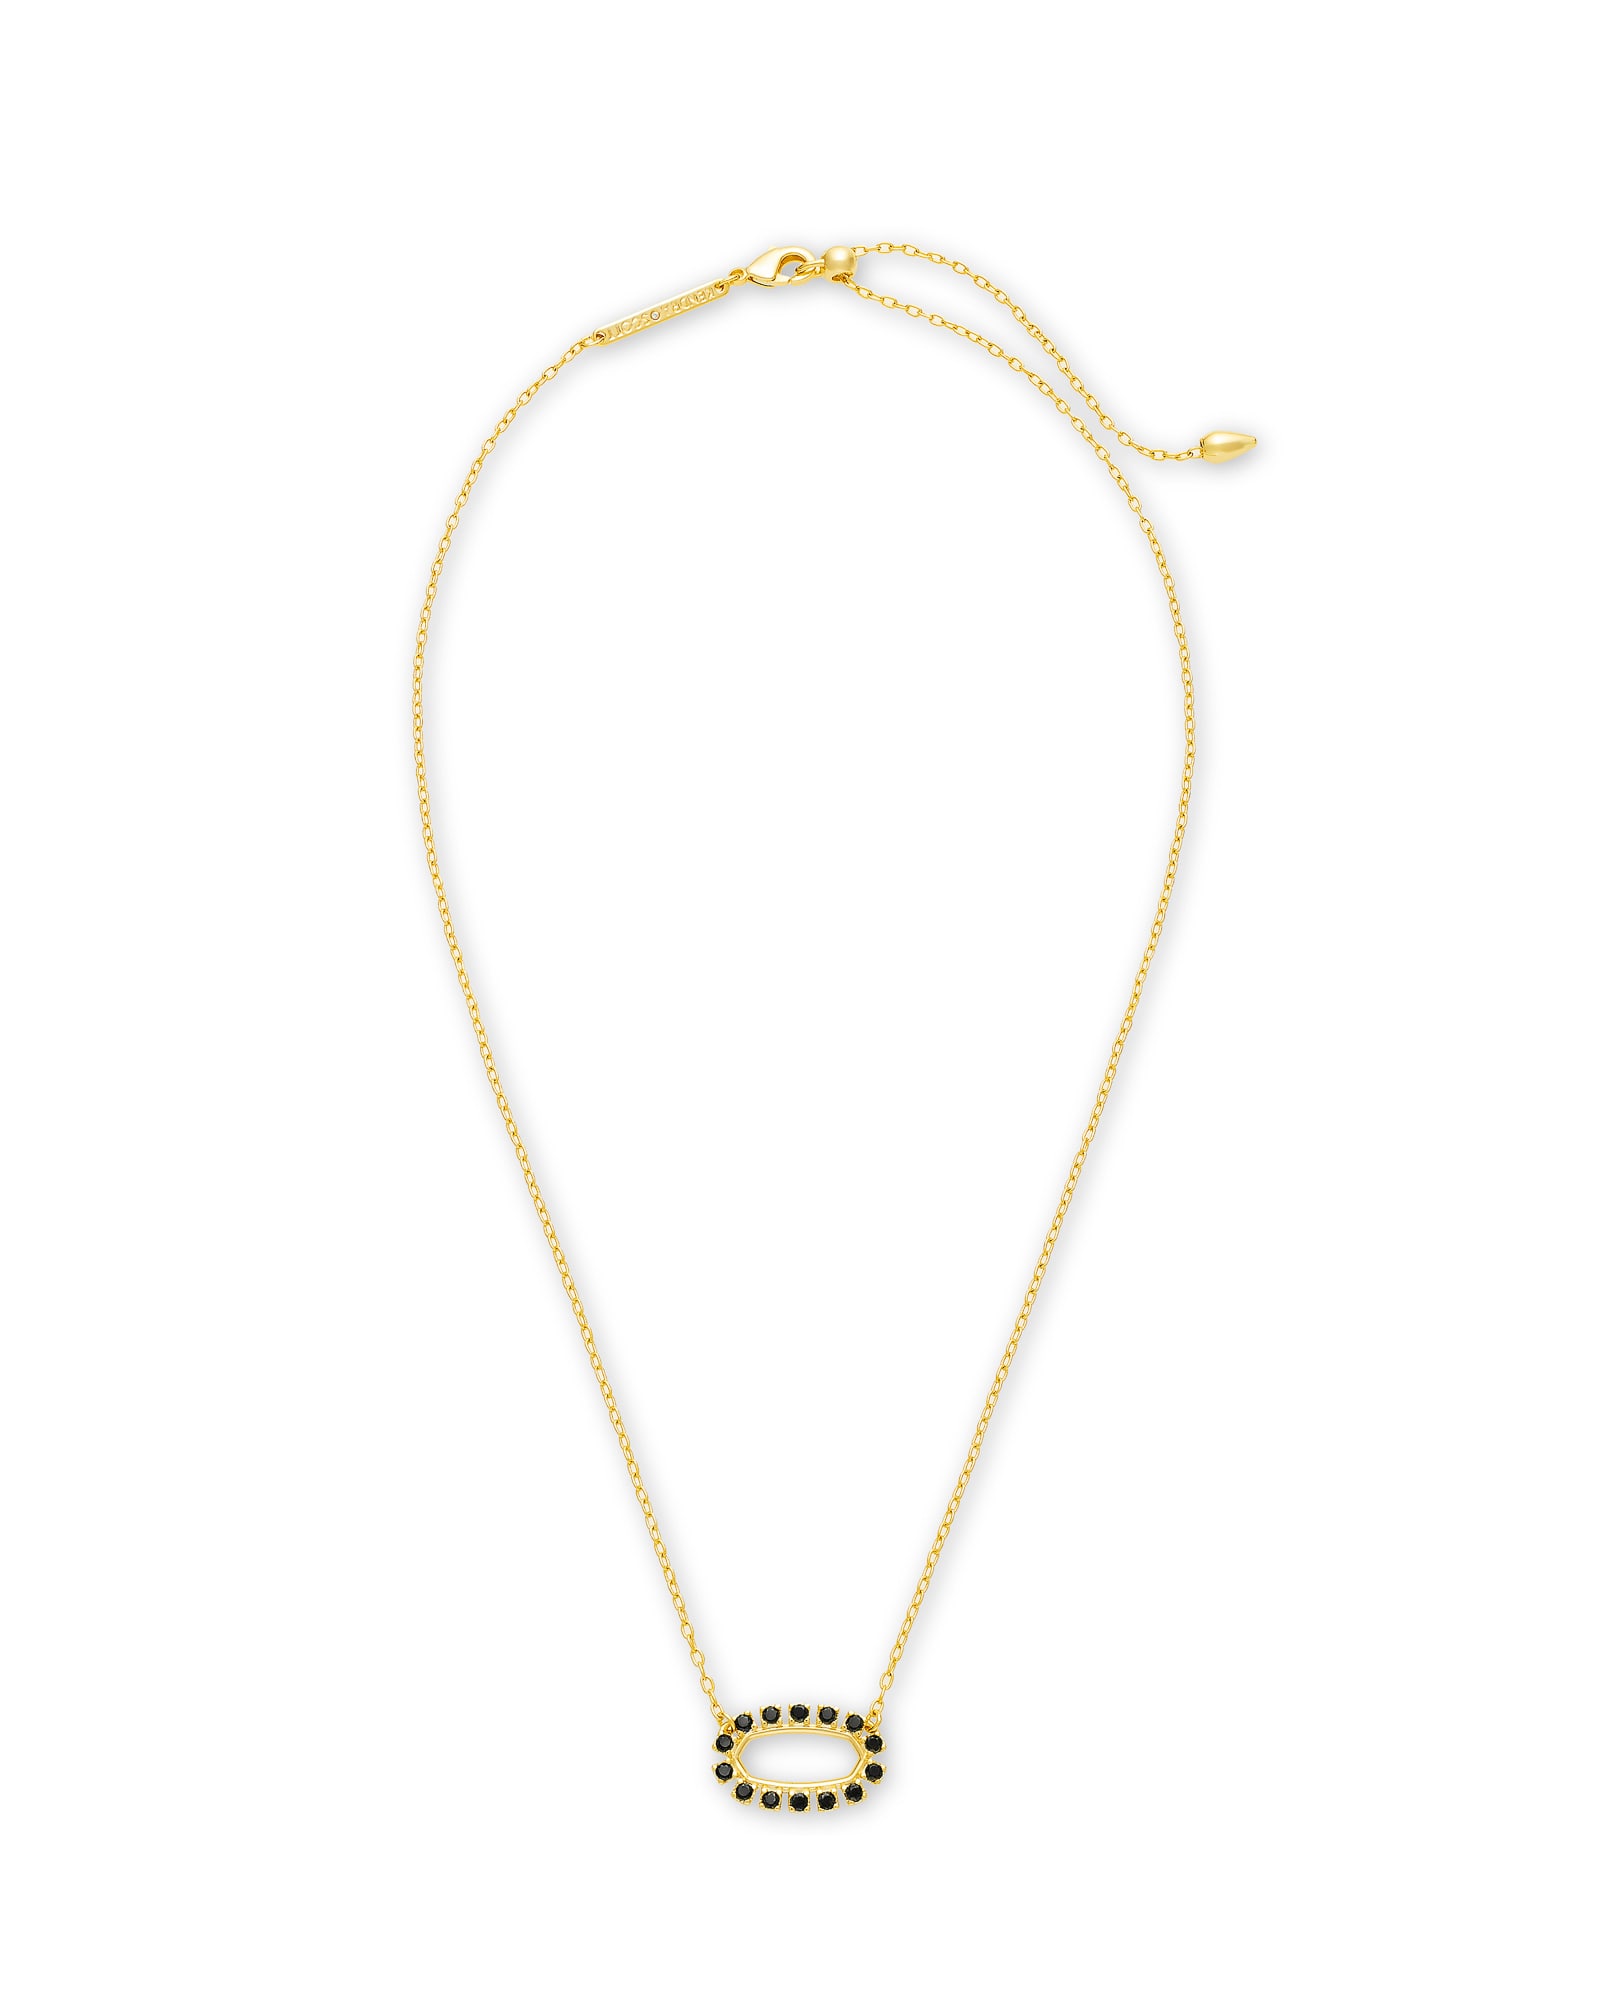 Elisa Gold Open Frame Pendant Necklace in Black Spinel image number 1.0